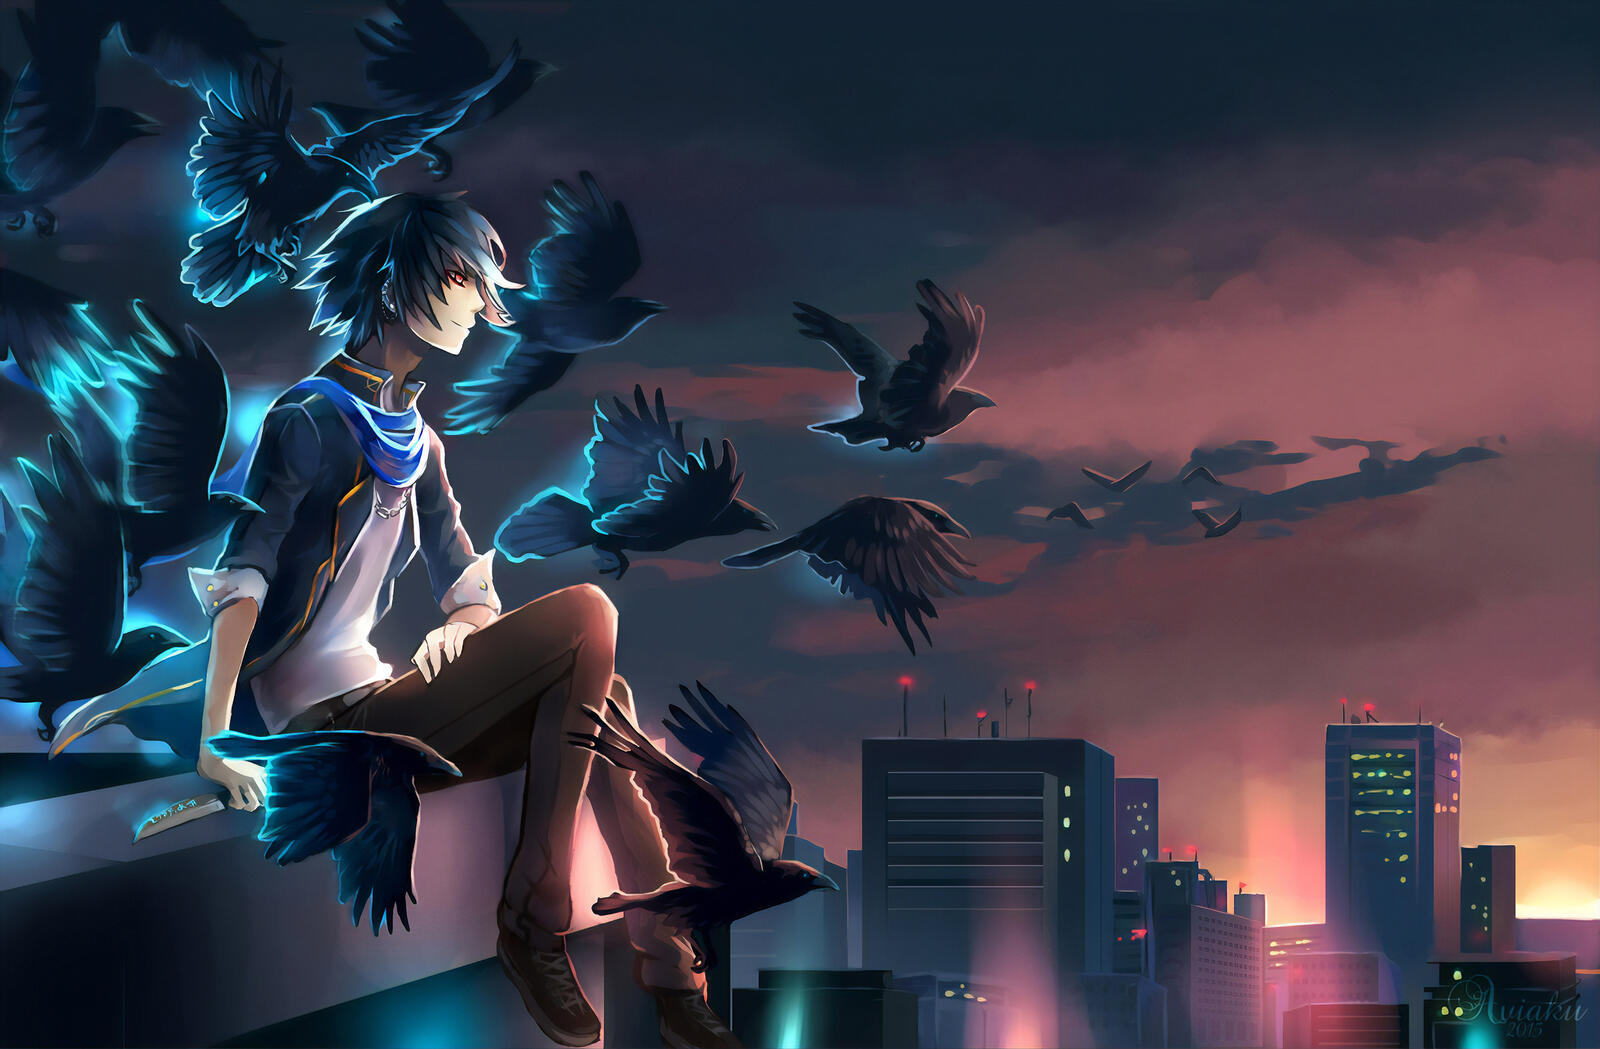 Бесплатное фото Мальчик из аниме сидит на крыше с воронами